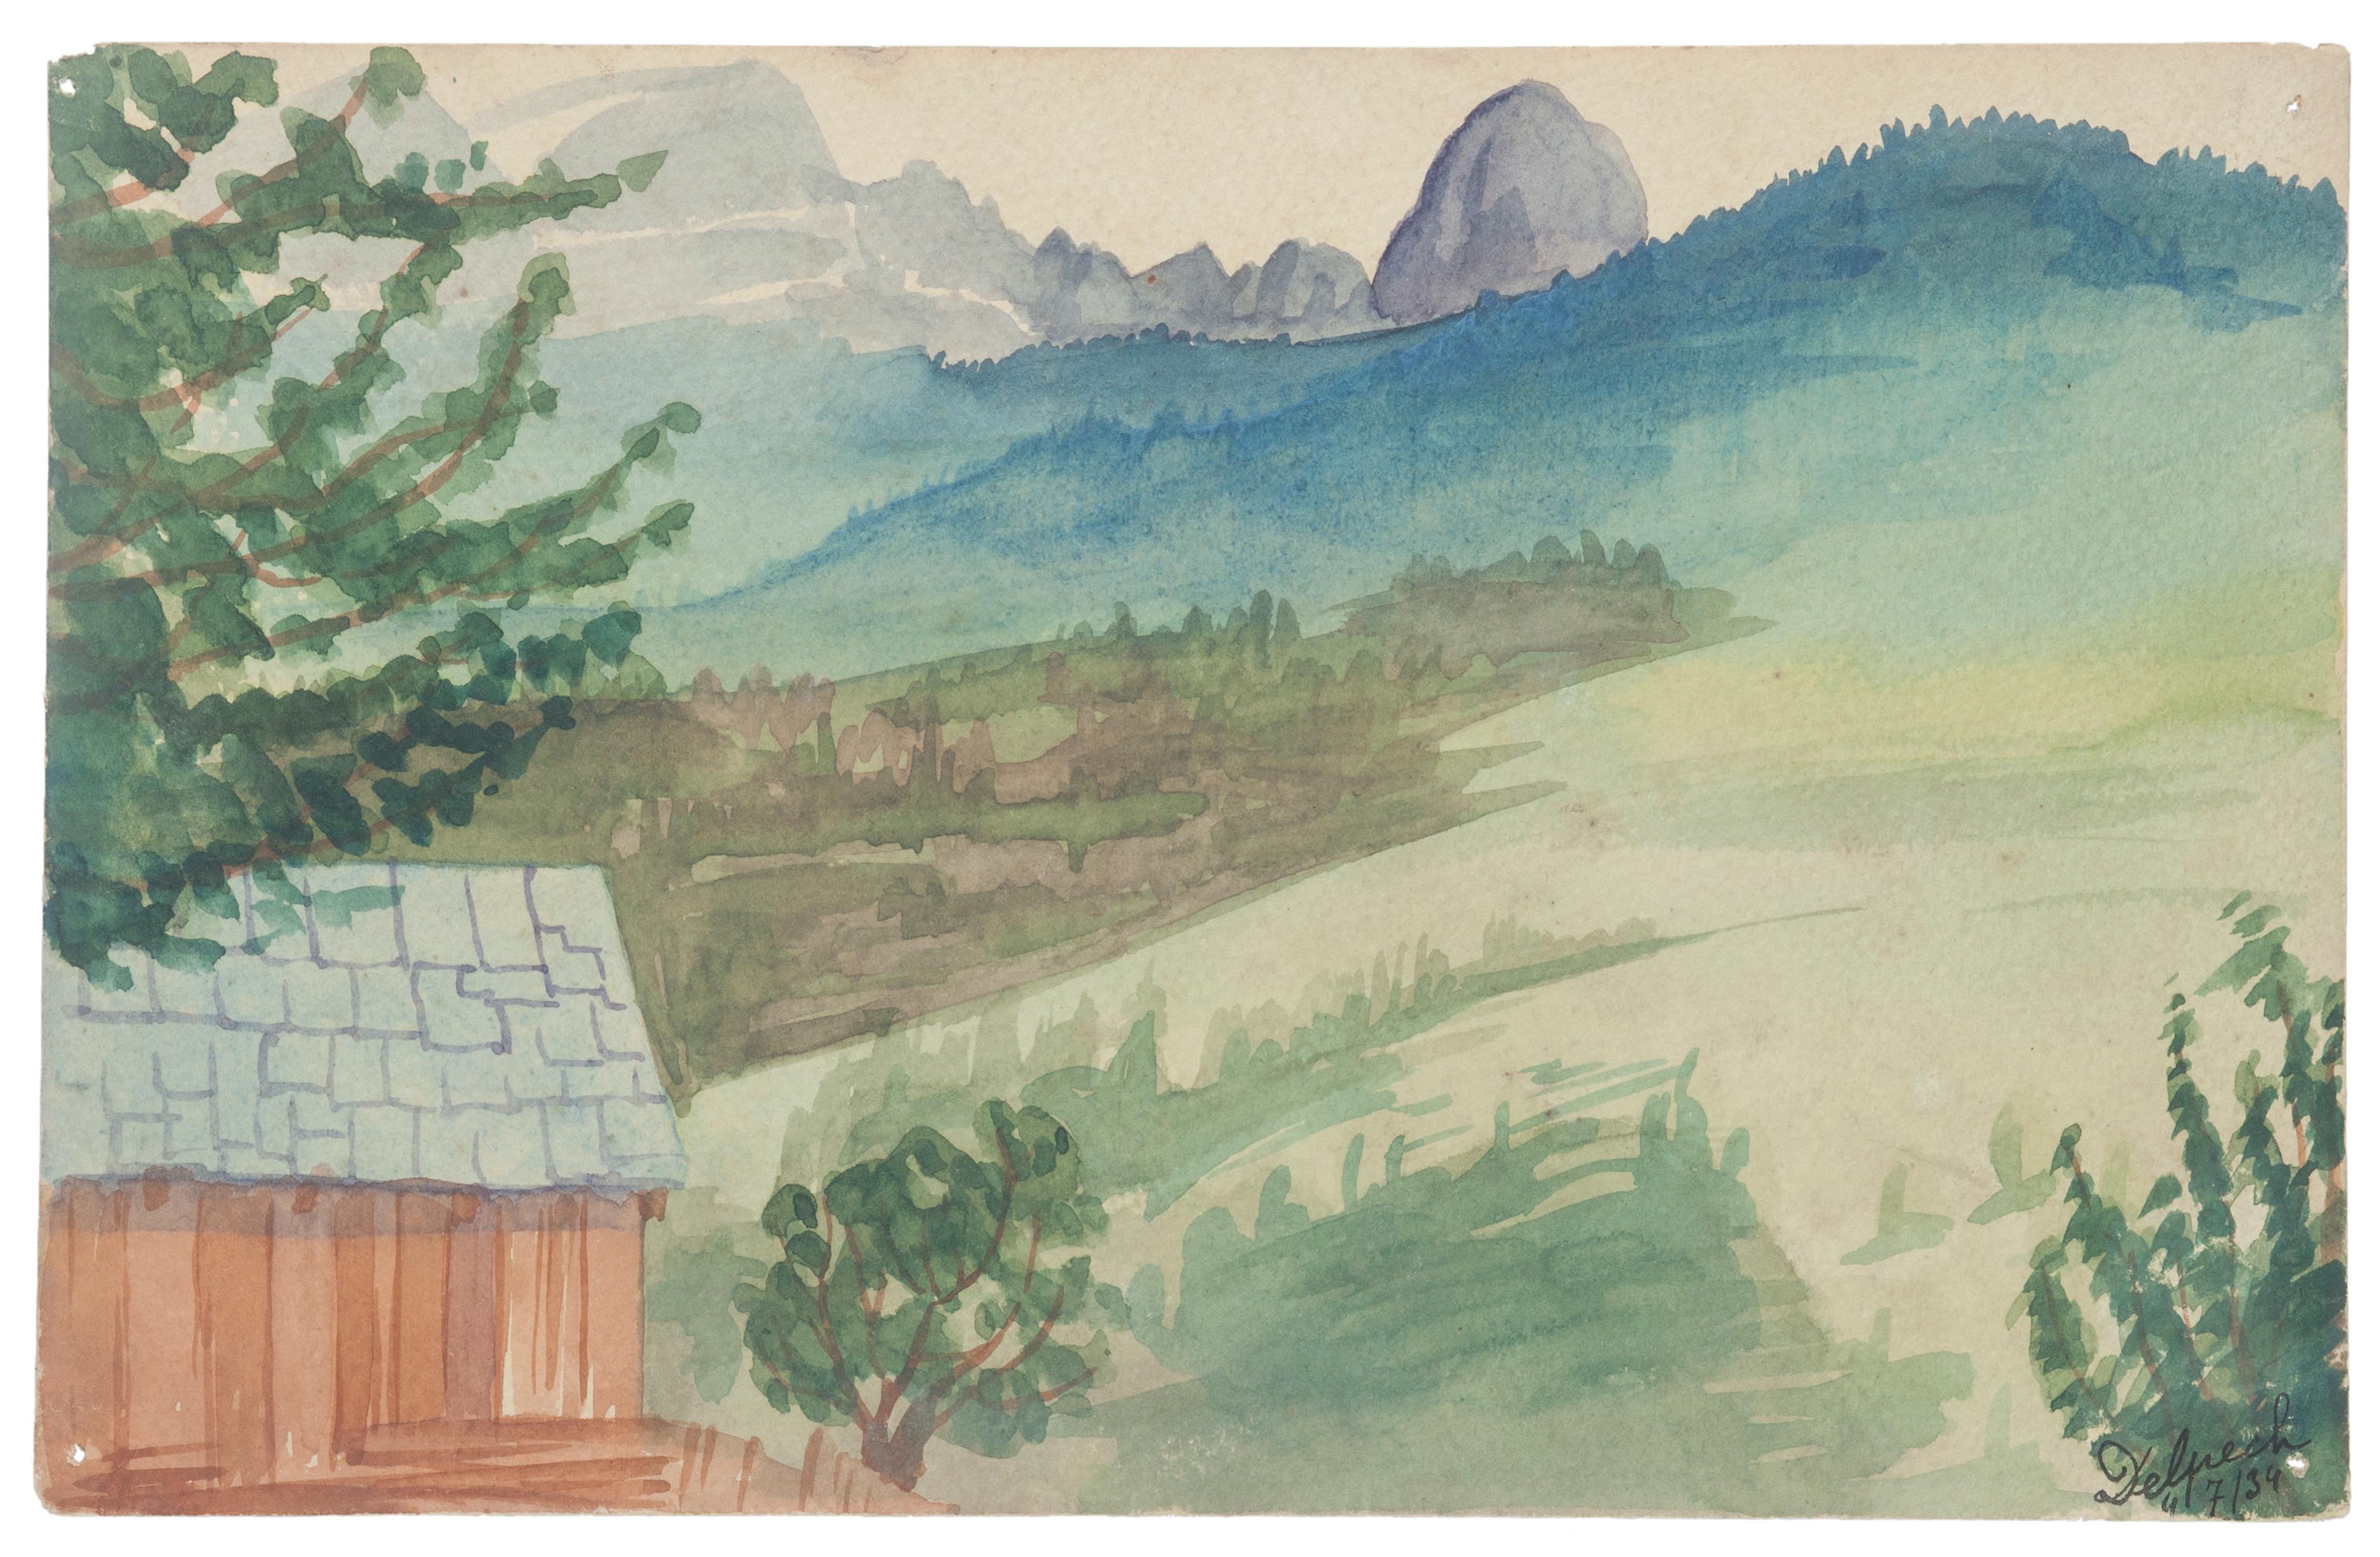 "Landschaft" ist eine Zeichnung in Aquarell auf Papier von Jean Delpech (1916-1988). 
Der Erhaltungszustand der Kunstwerke ist sehr gut.

Blattgröße: 15 x 23,5 cm.

Das Kunstwerk stellt eine wunderschöne Landschaft mit lebendigen Farben dar, die mit